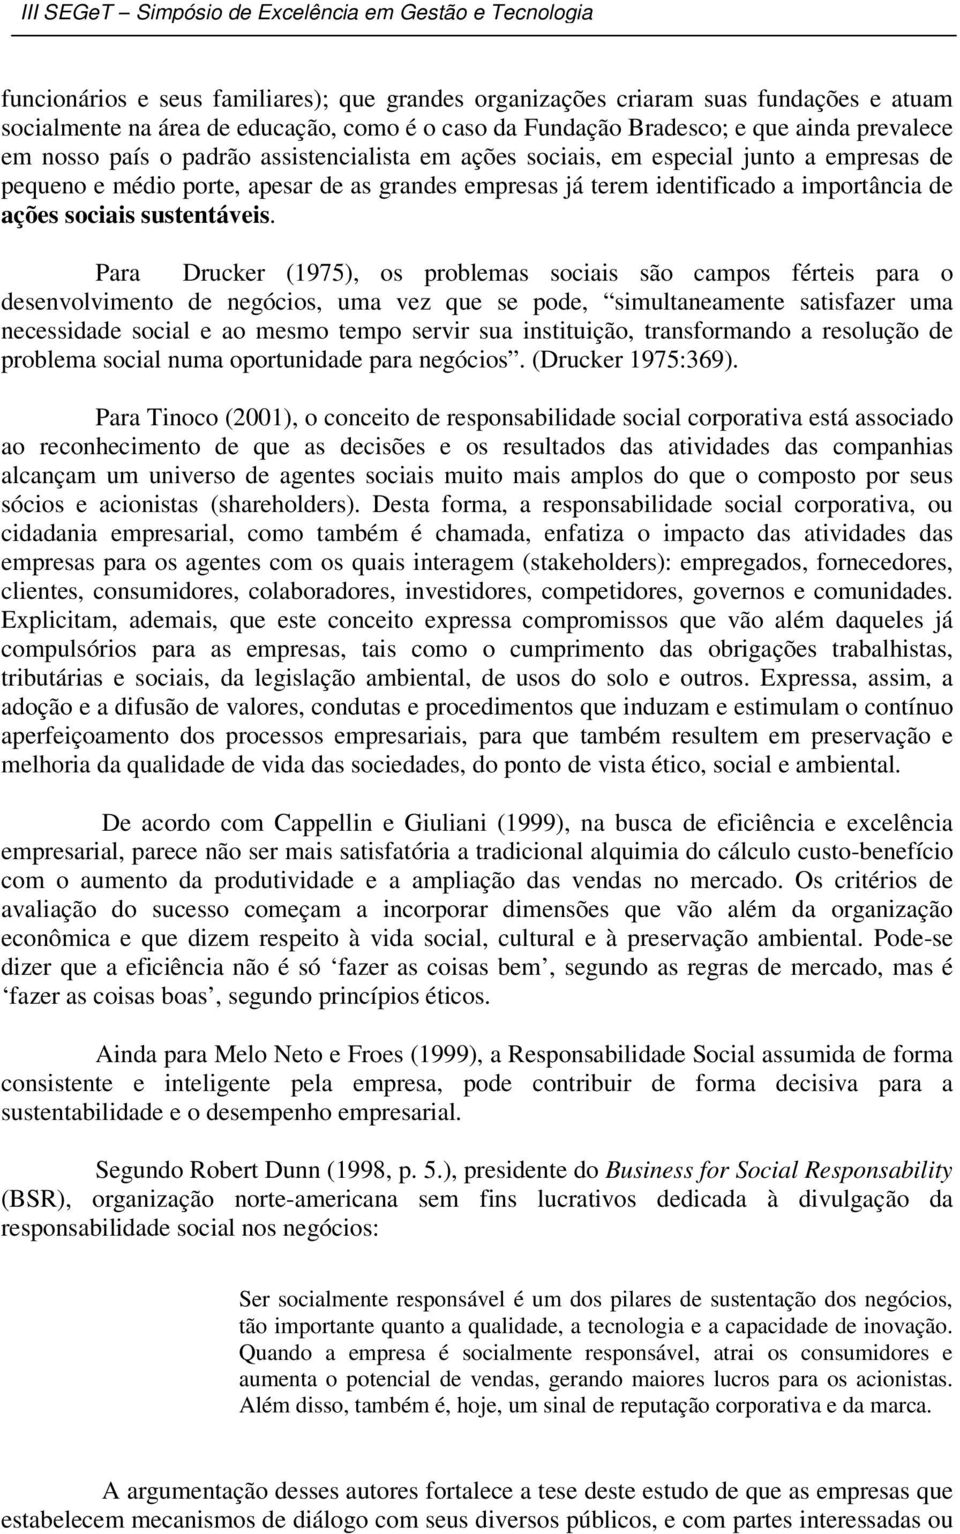 Para Drucker (1975), os problemas sociais são campos férteis para o desenvolvimento de negócios, uma vez que se pode, simultaneamente satisfazer uma necessidade social e ao mesmo tempo servir sua